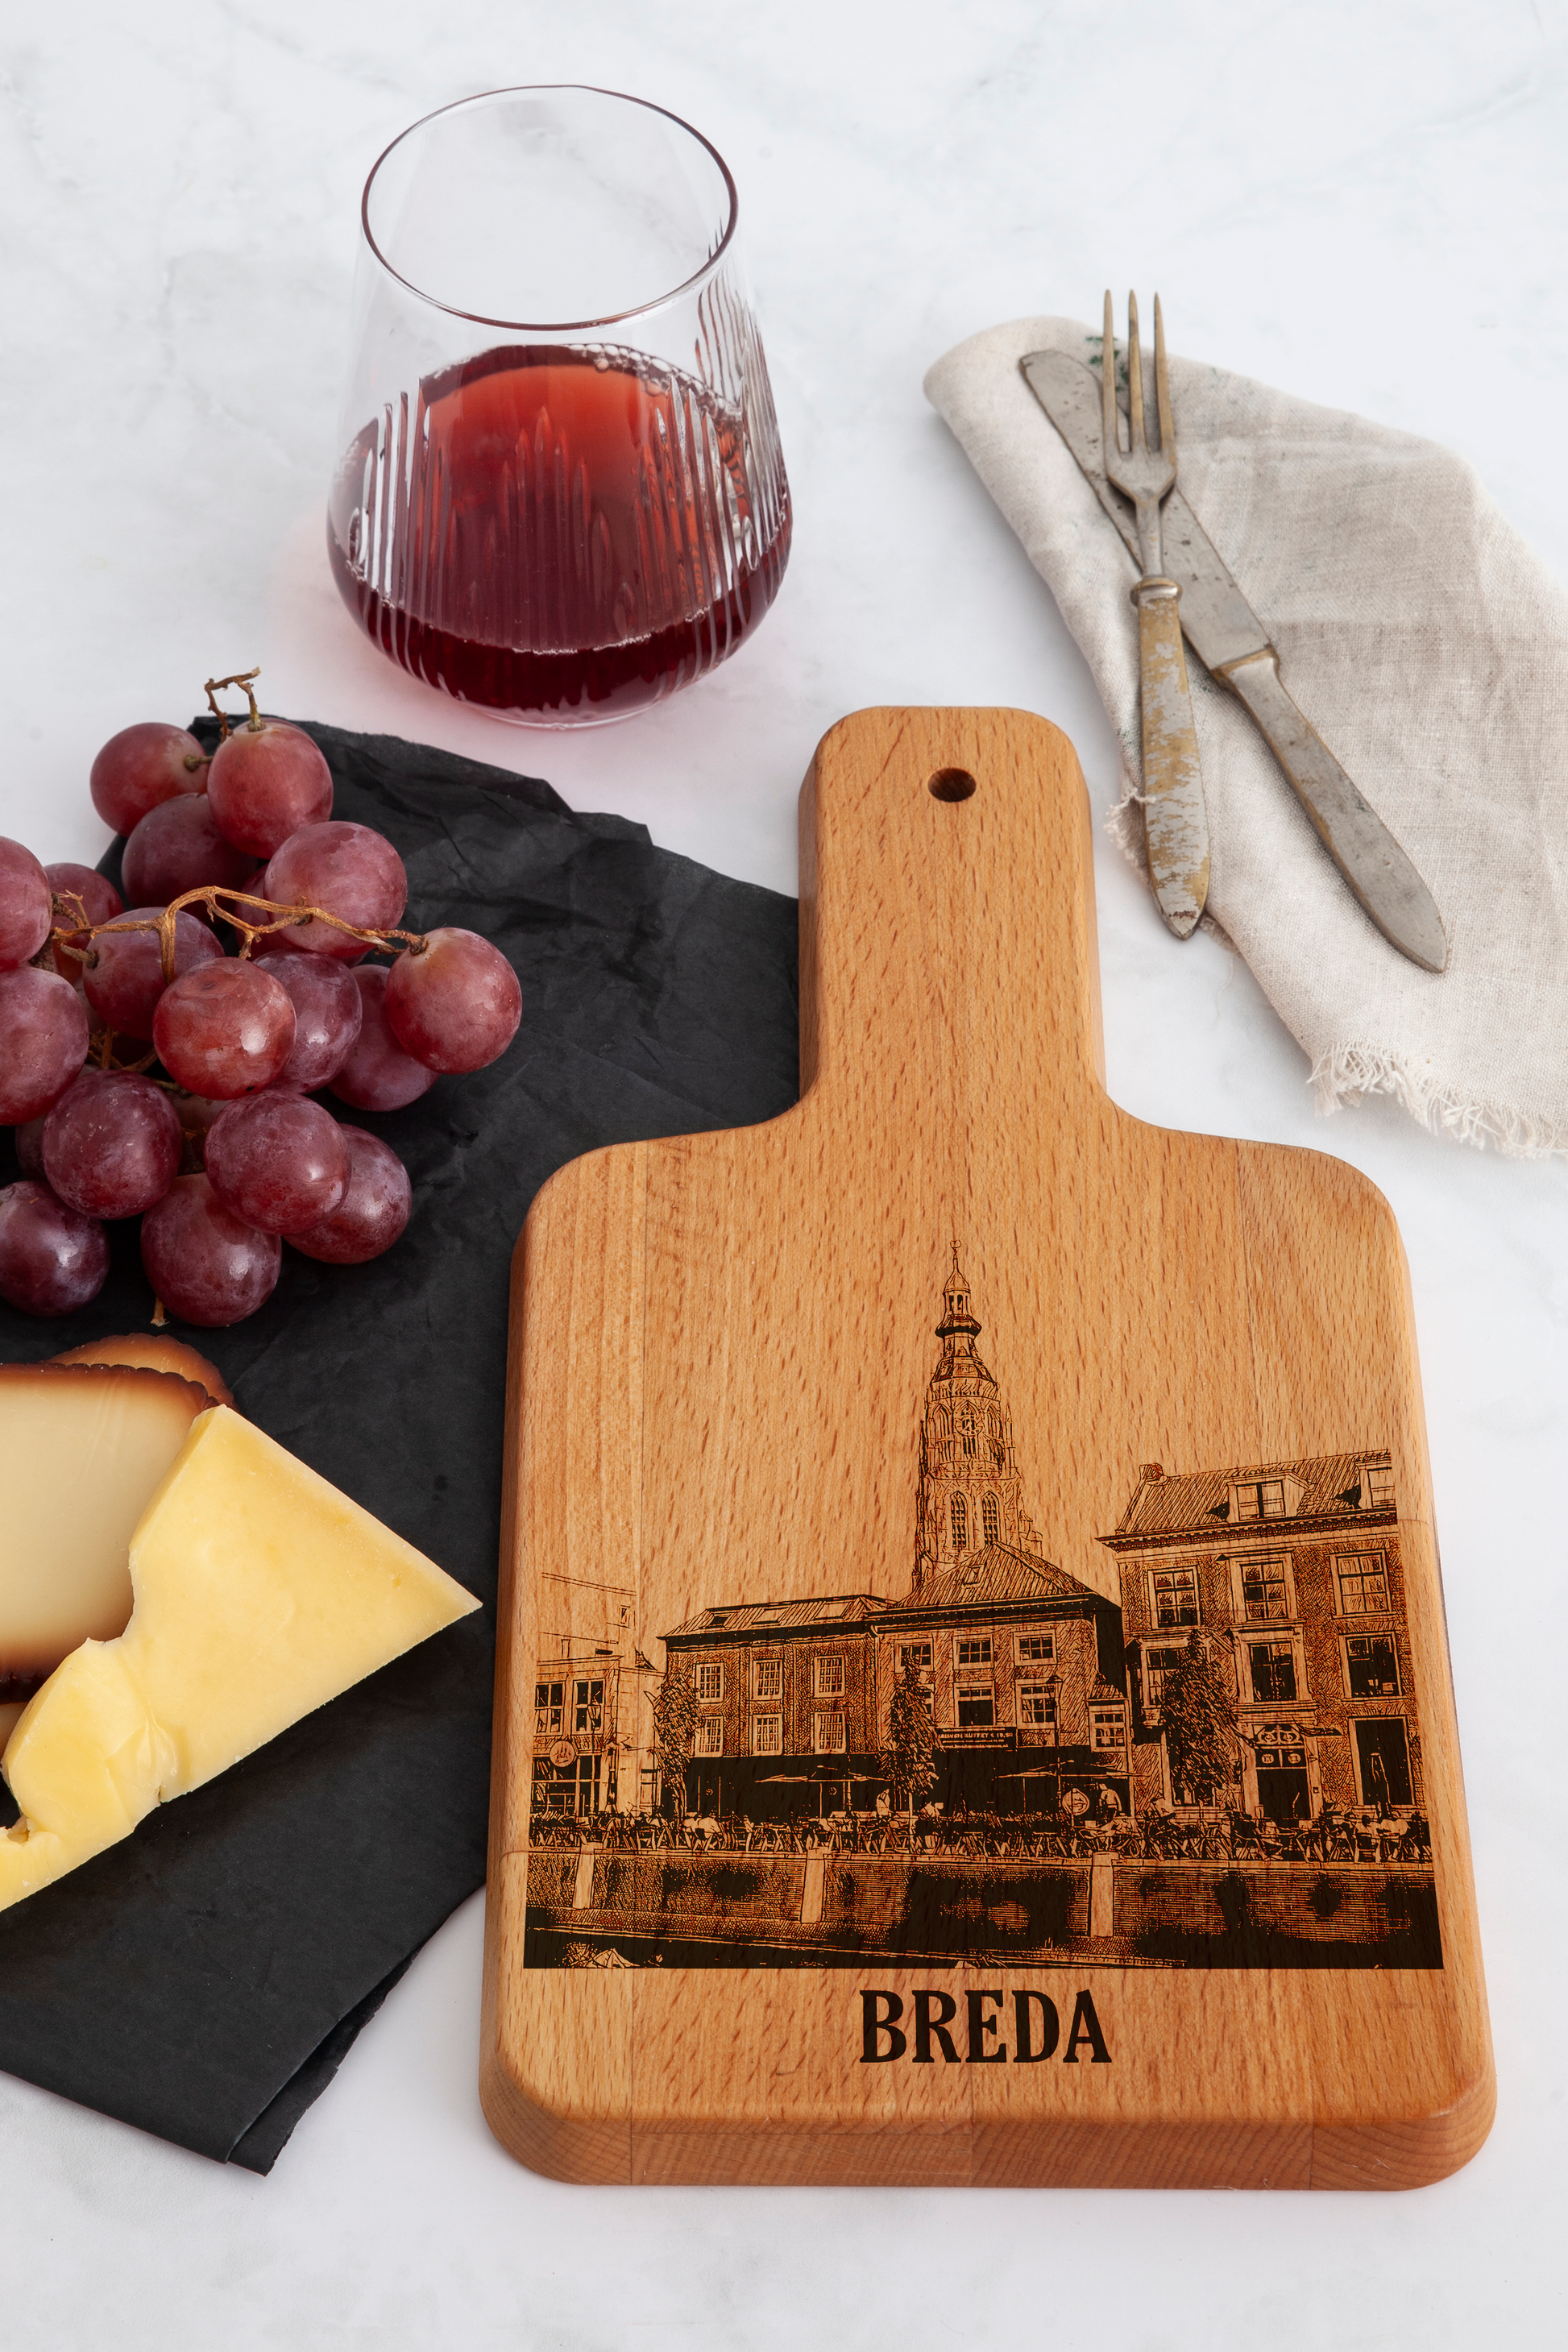 Breda, Grote Kerk, cheese board, on countertop